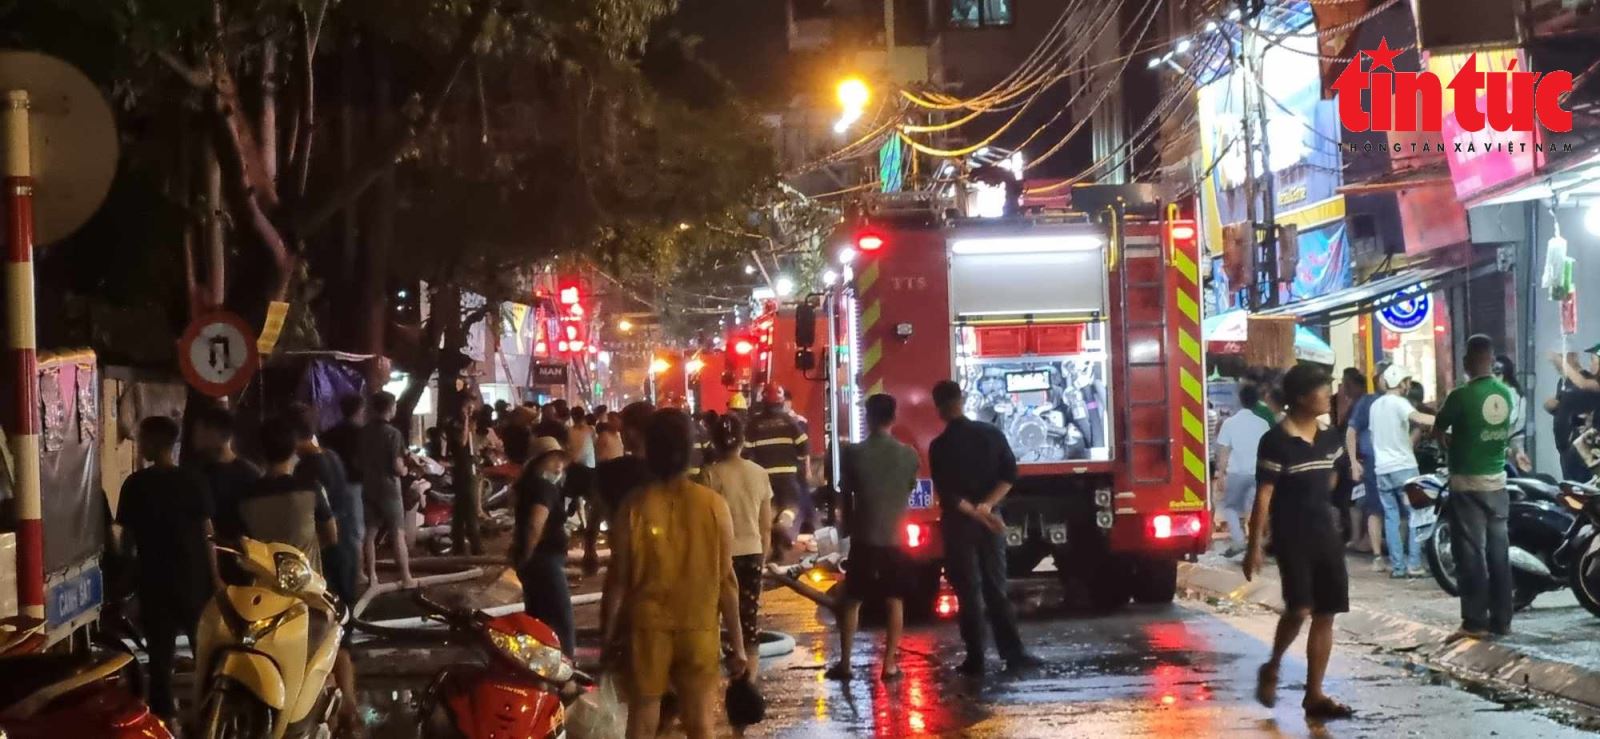 Ngay sau khi nhận được tin, Công an thành phố Hà Nội điều động 2 xe chữa cháy của quận Hoàng Mai, 2 xe chữa cháy của phòng Cảnh sát phòng cháy chữa cháy và cứu nạn cứu hộ Công an thành phố cùng các lực lượng khác của Công an quận Hoàng Mai tới hiện trường - Ảnh: Báo Tin tức